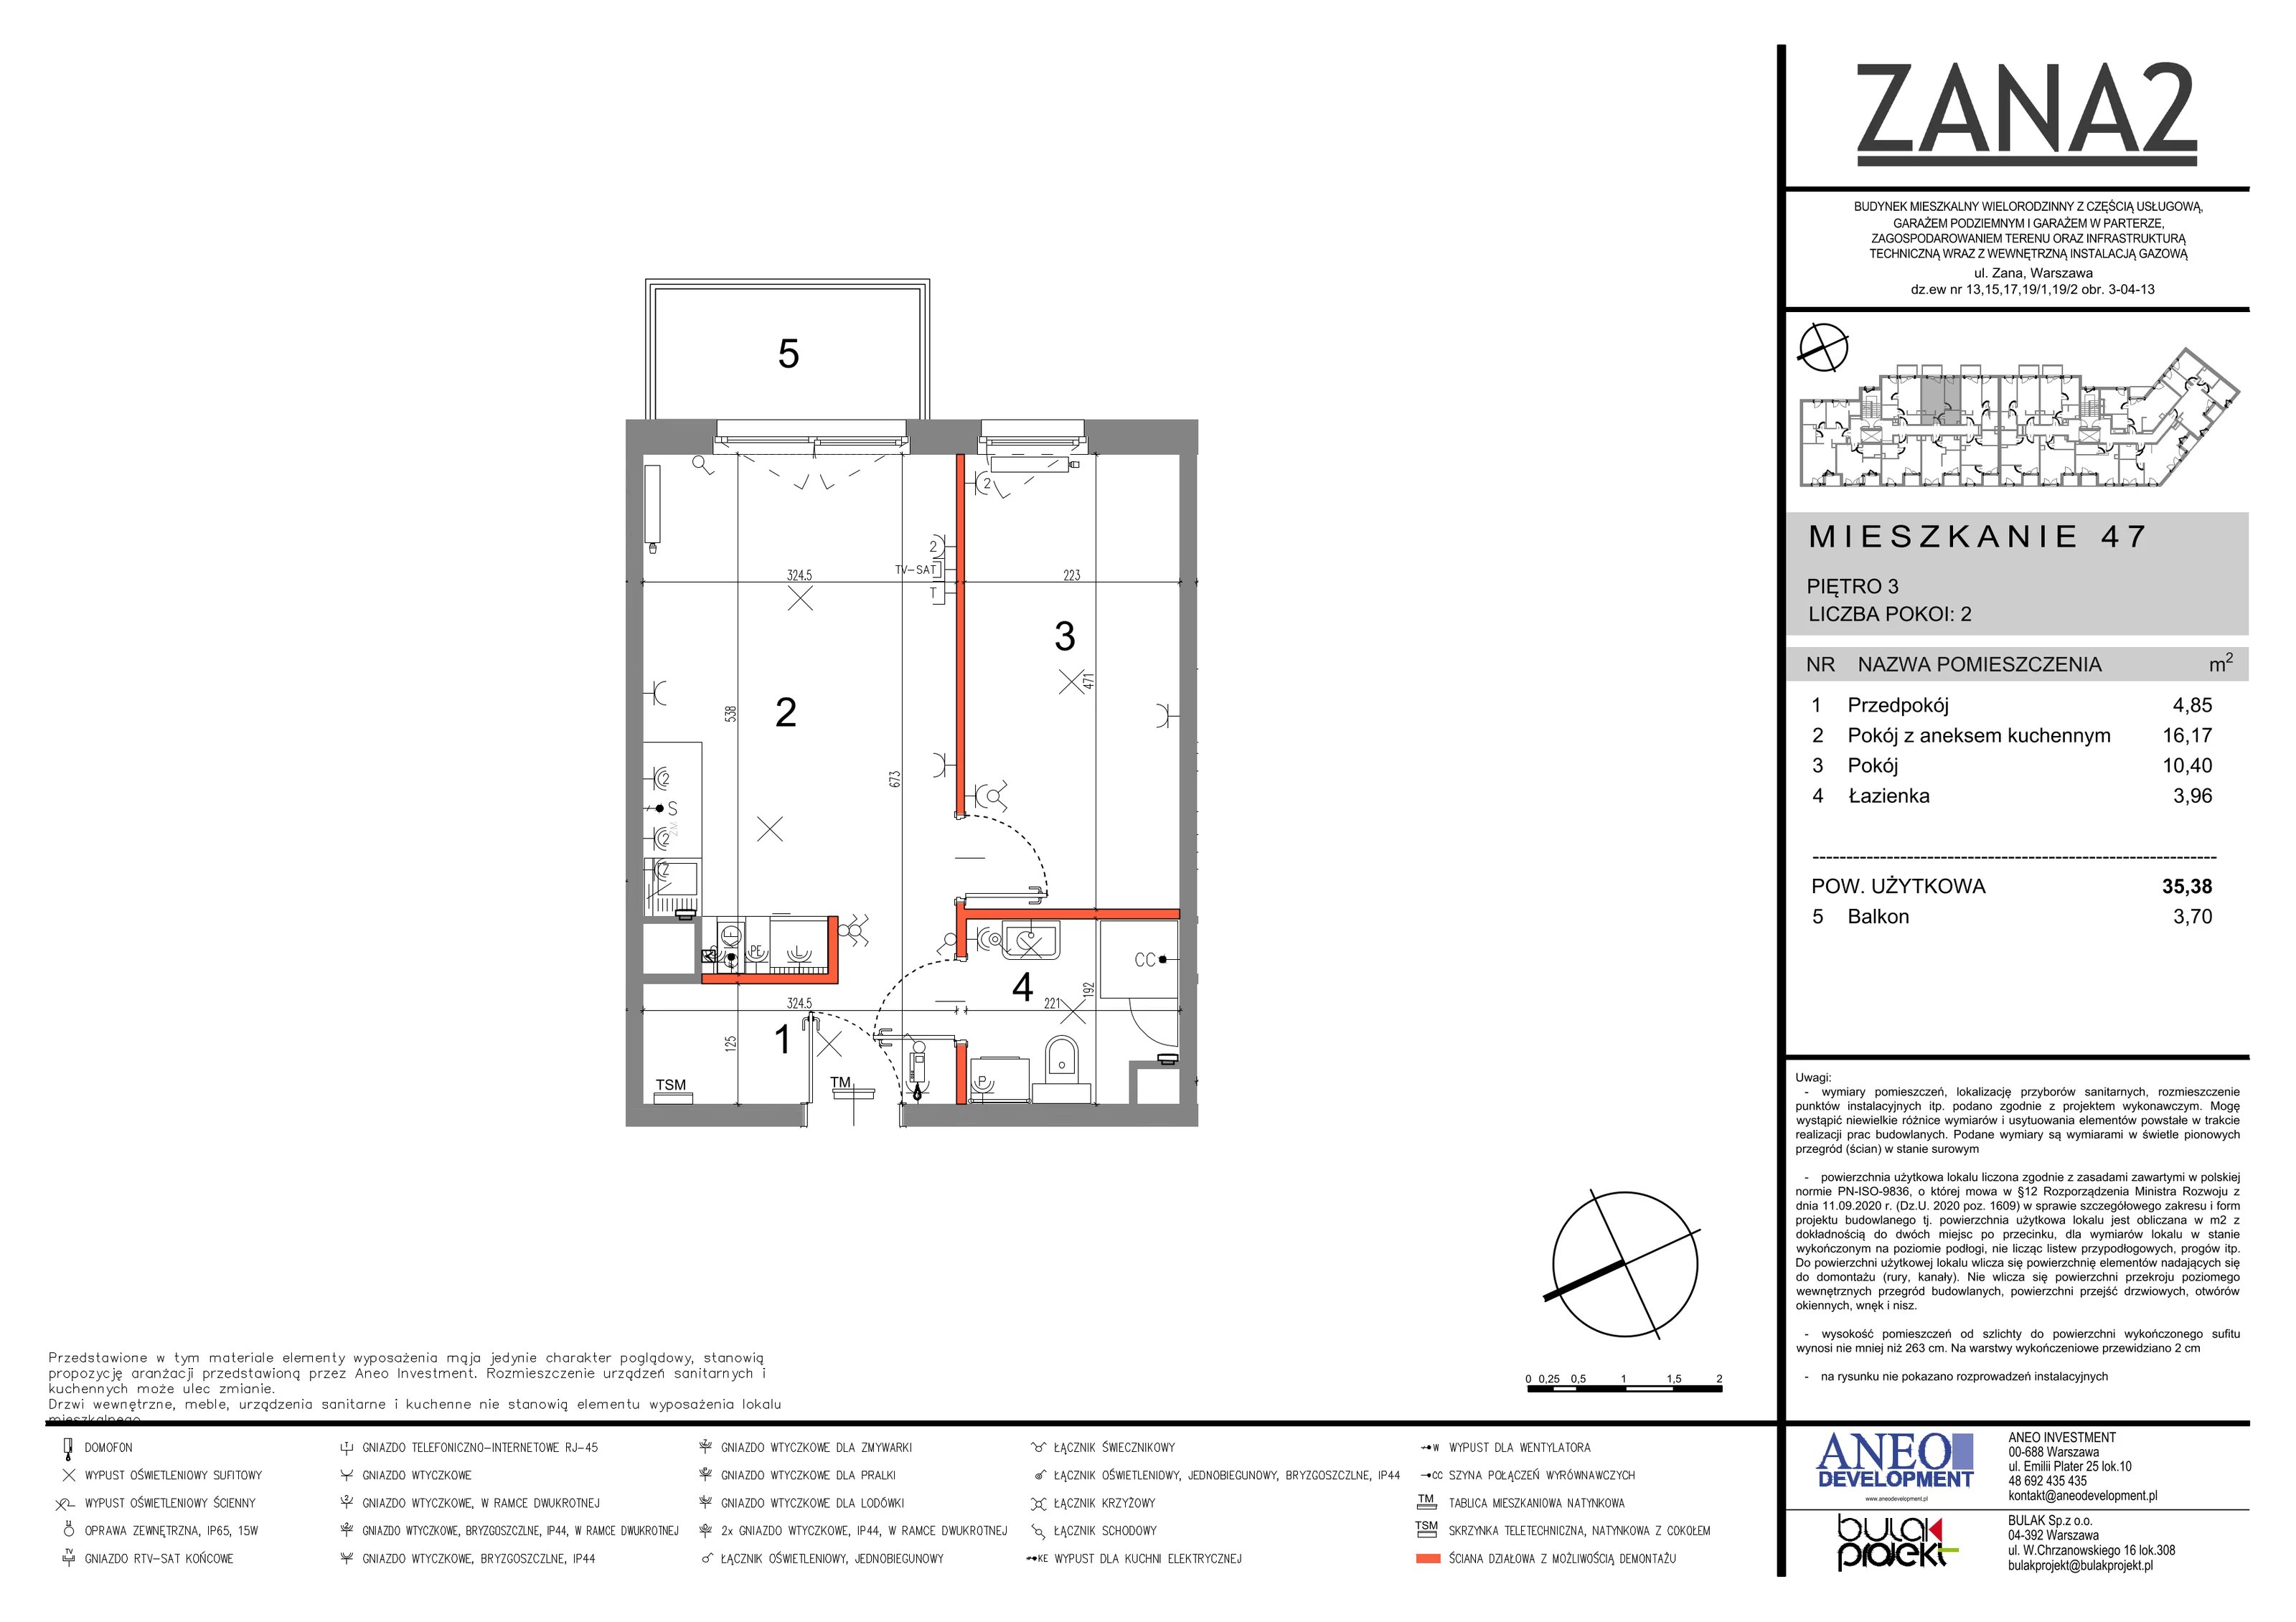 Mieszkanie 29,65 m², piętro 3, oferta nr 47, Zana 2, Warszawa, Praga Południe, Gocławek, ul. Tomasza Zana